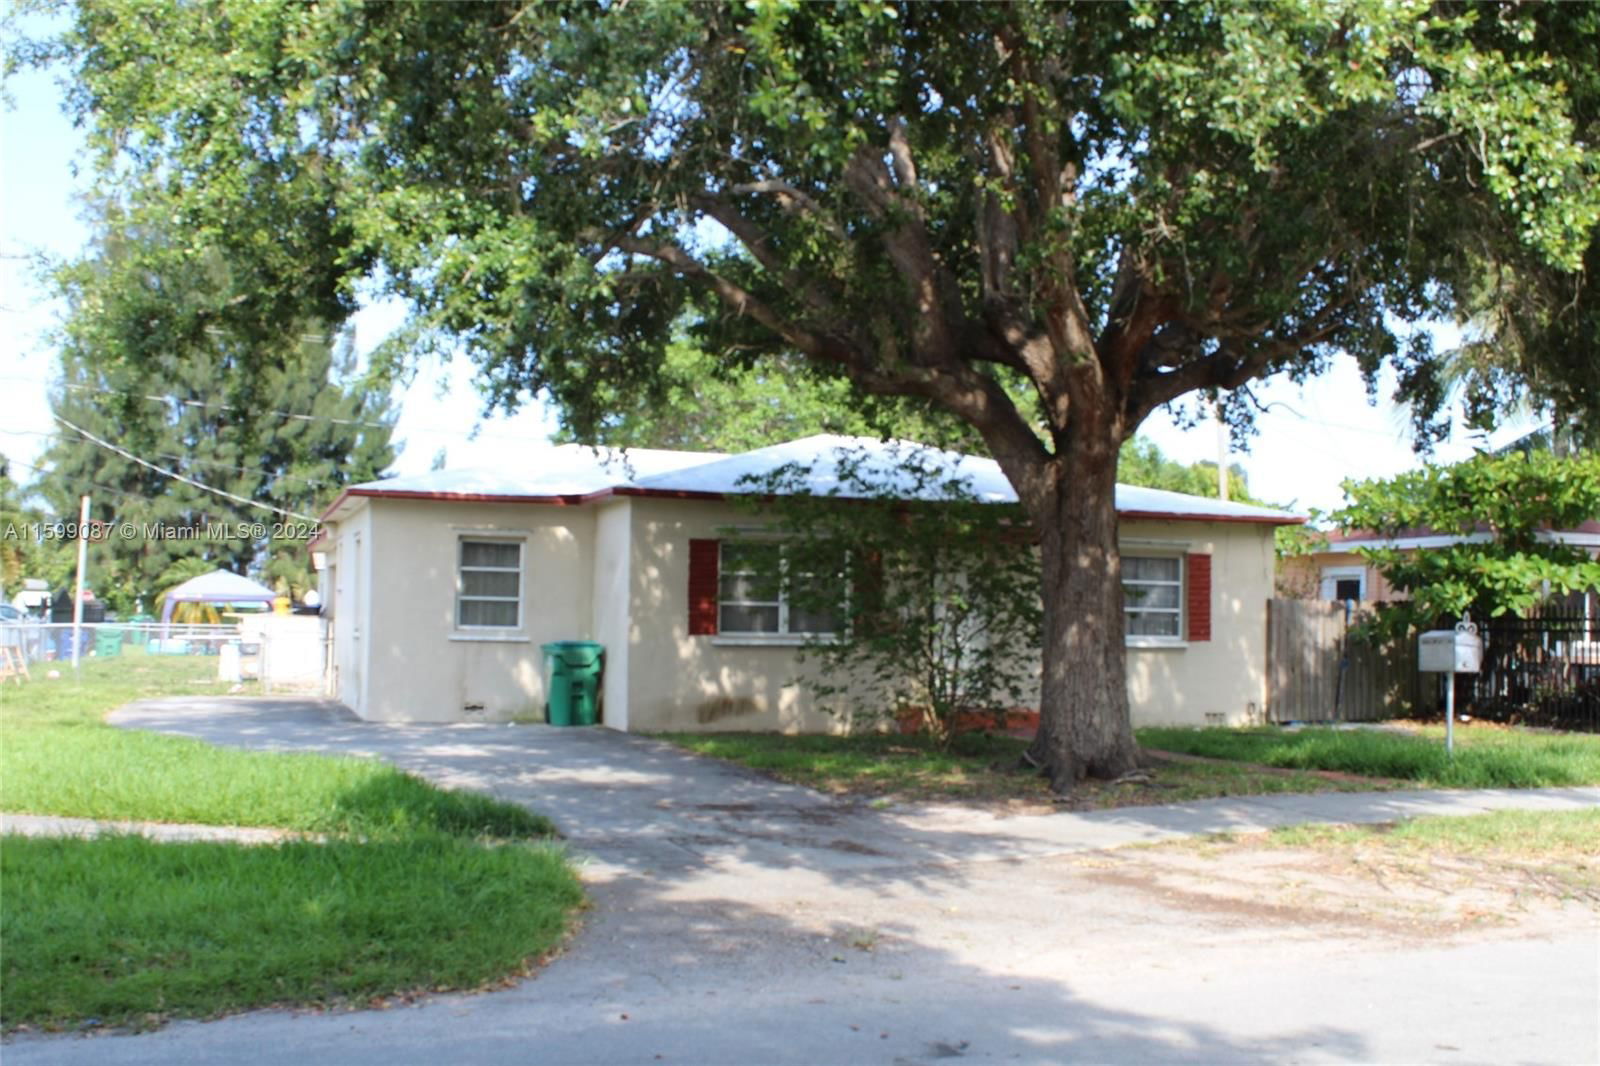 Real estate property located at 9221 15th Ave, Miami-Dade County, FLAMINGO VILLAGE, Miami, FL